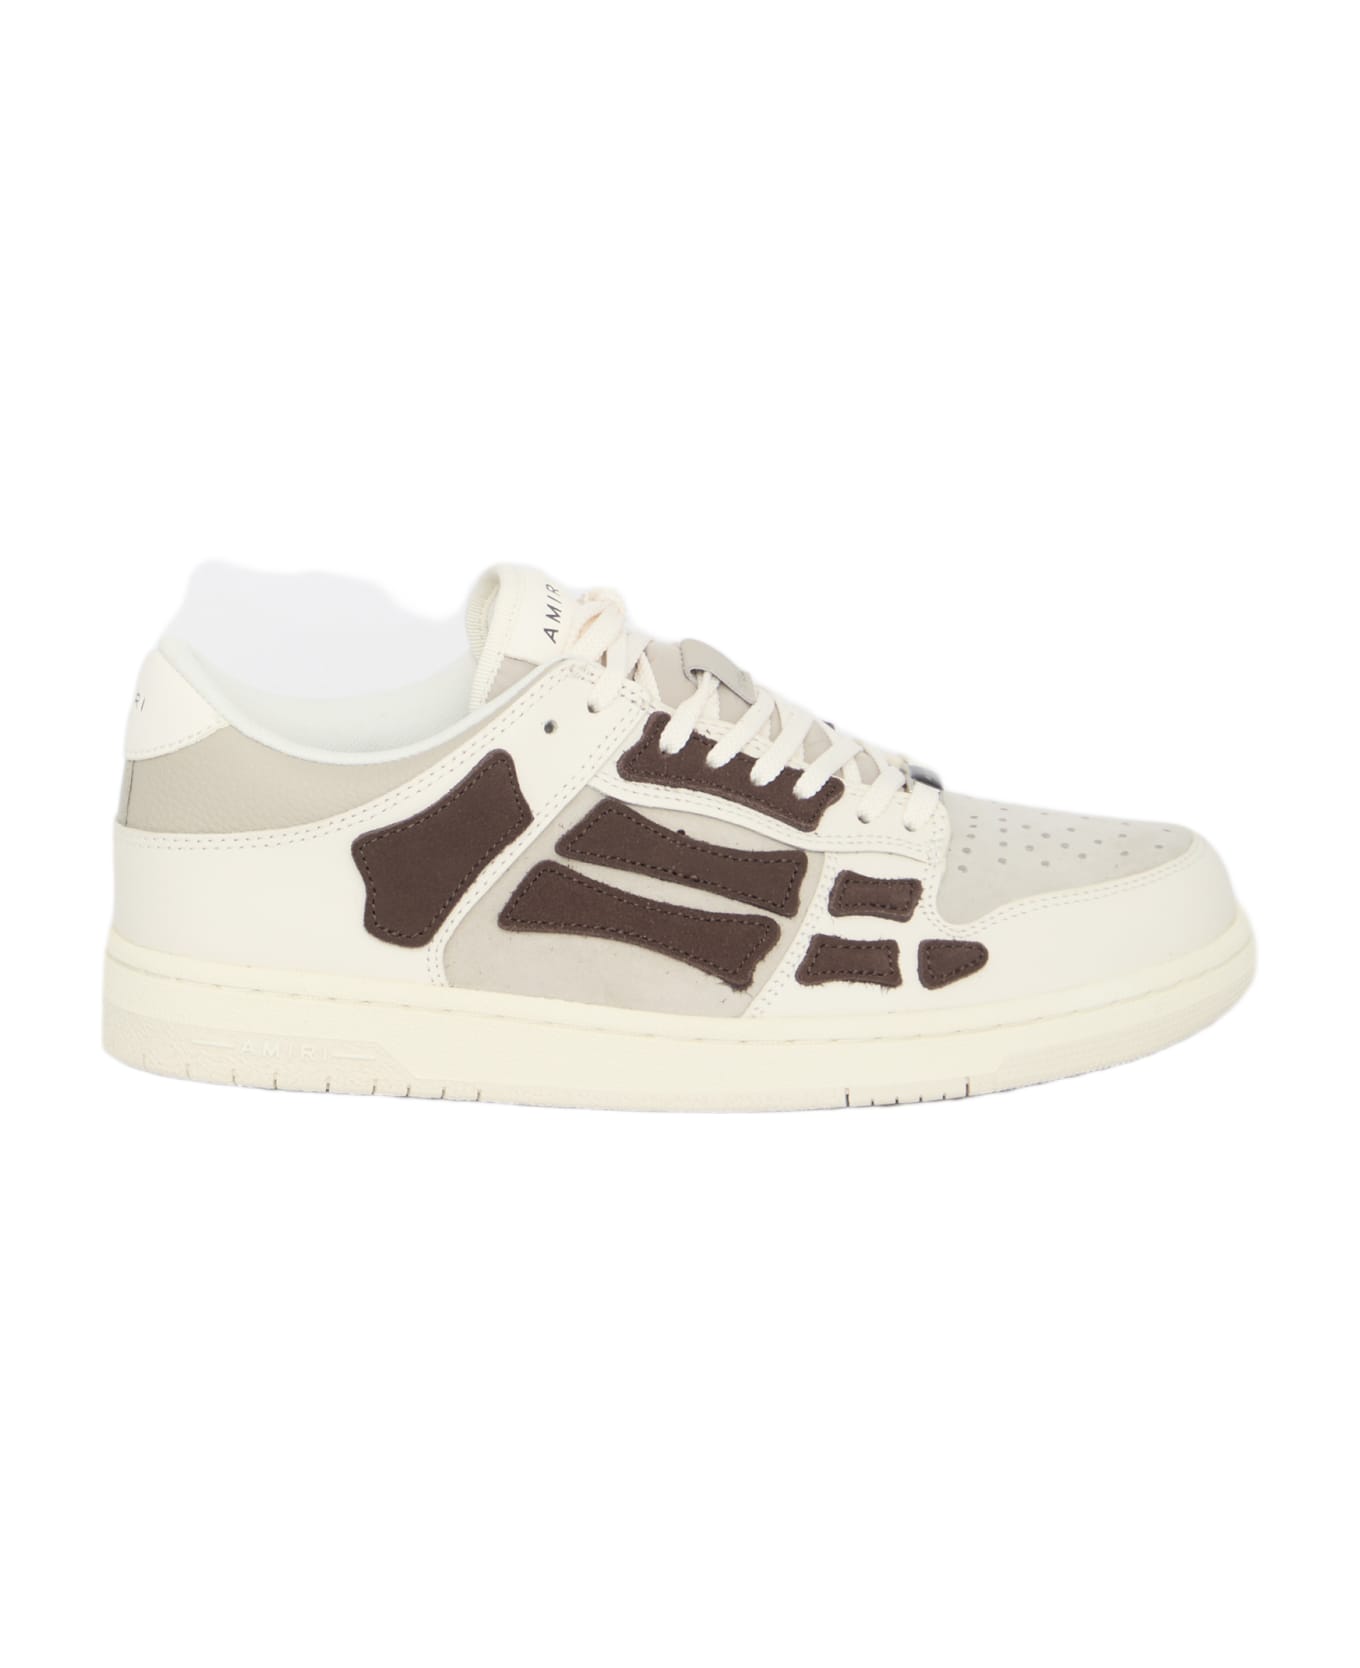 AMIRI Skel Top Low Sneakers - WHITE